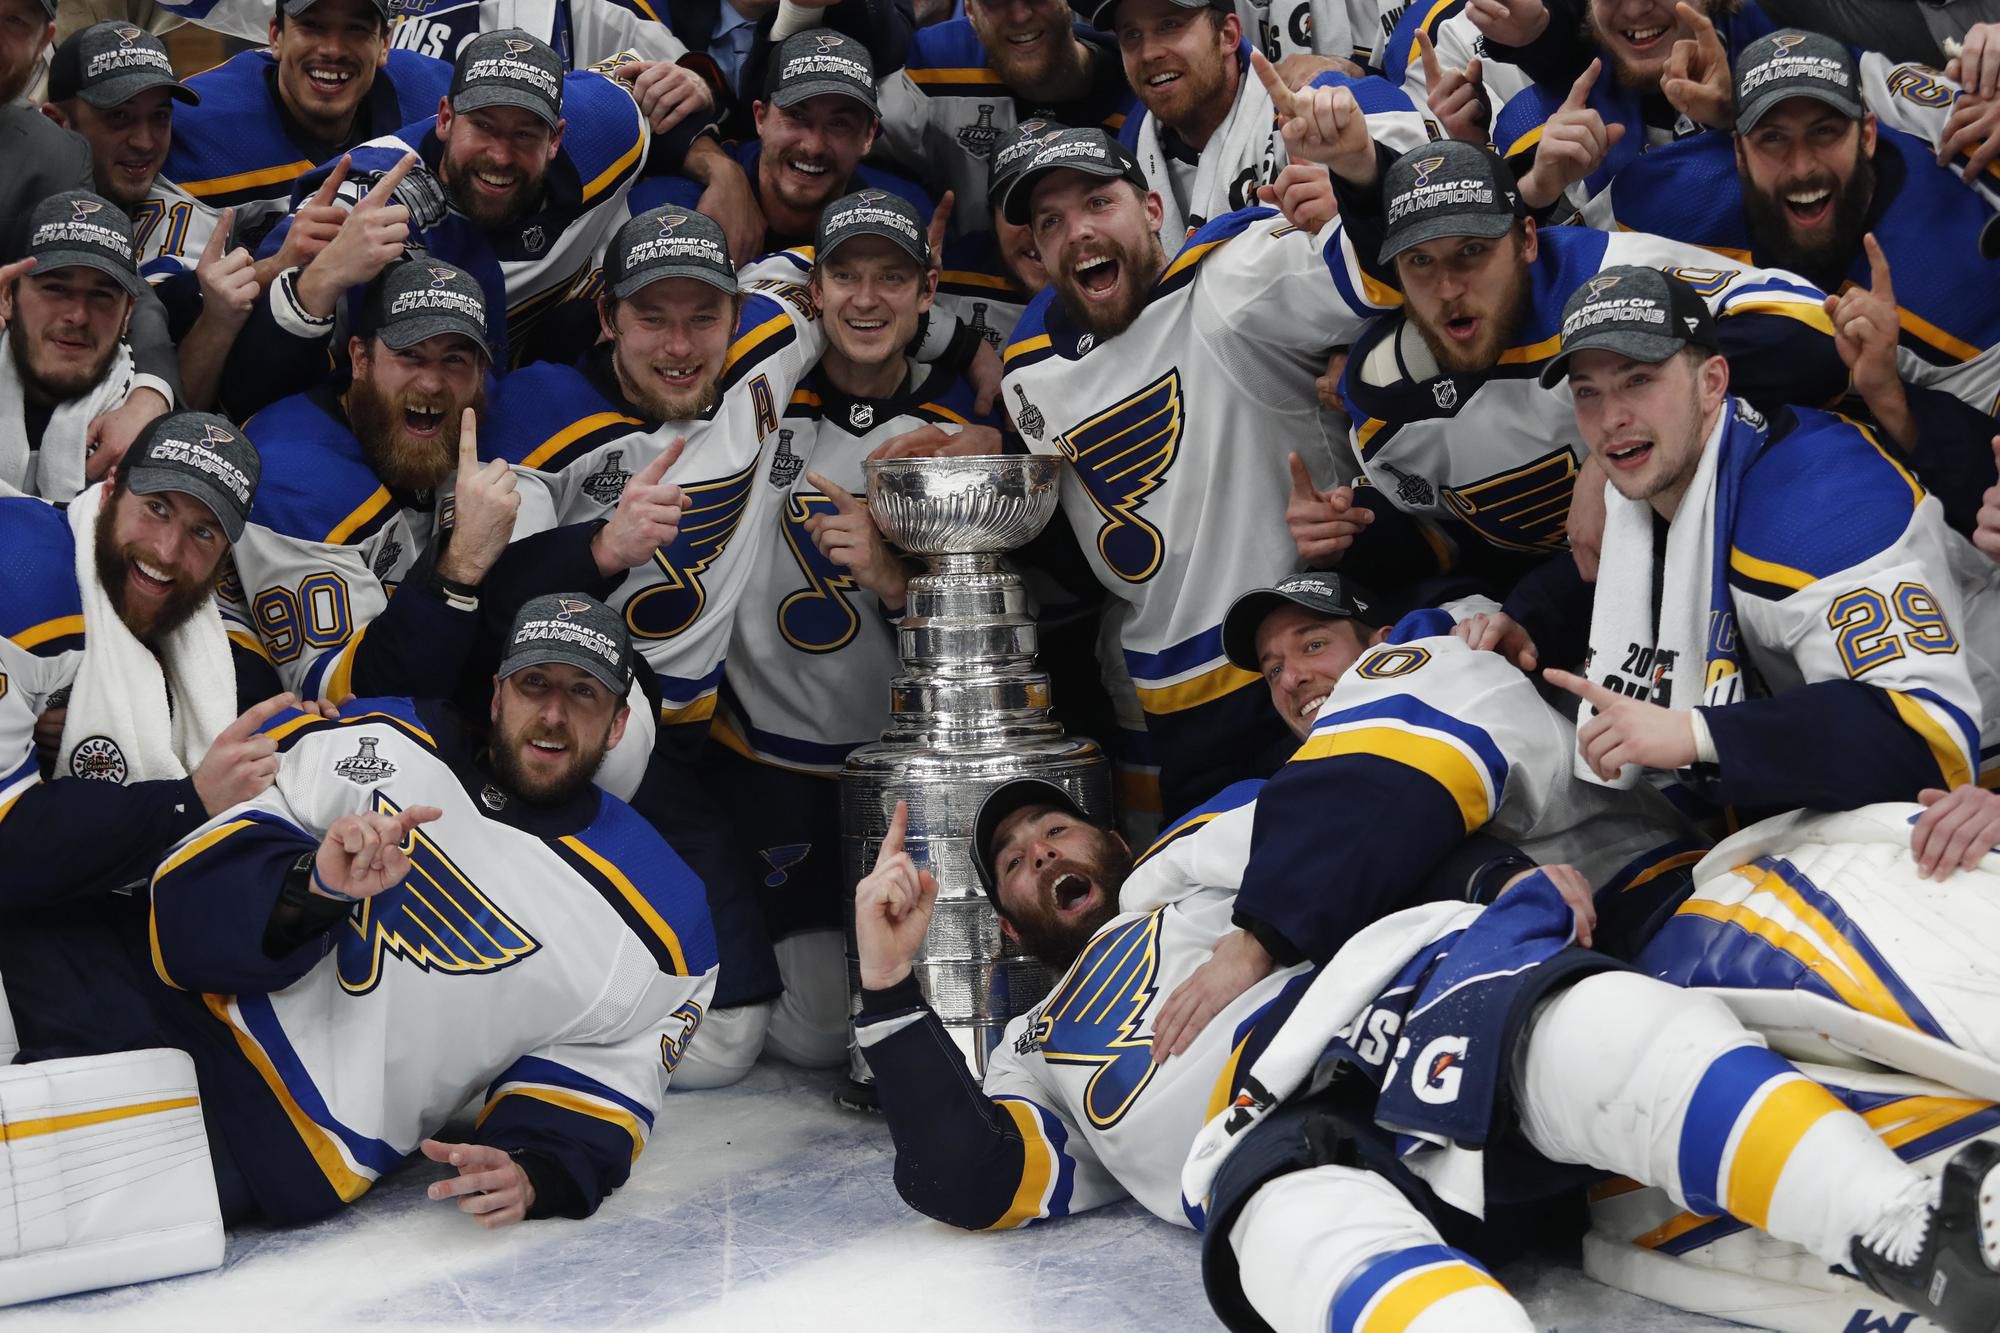 Hokejisti St. Louis sa tešia z historického víťazstva Stanley Cupu